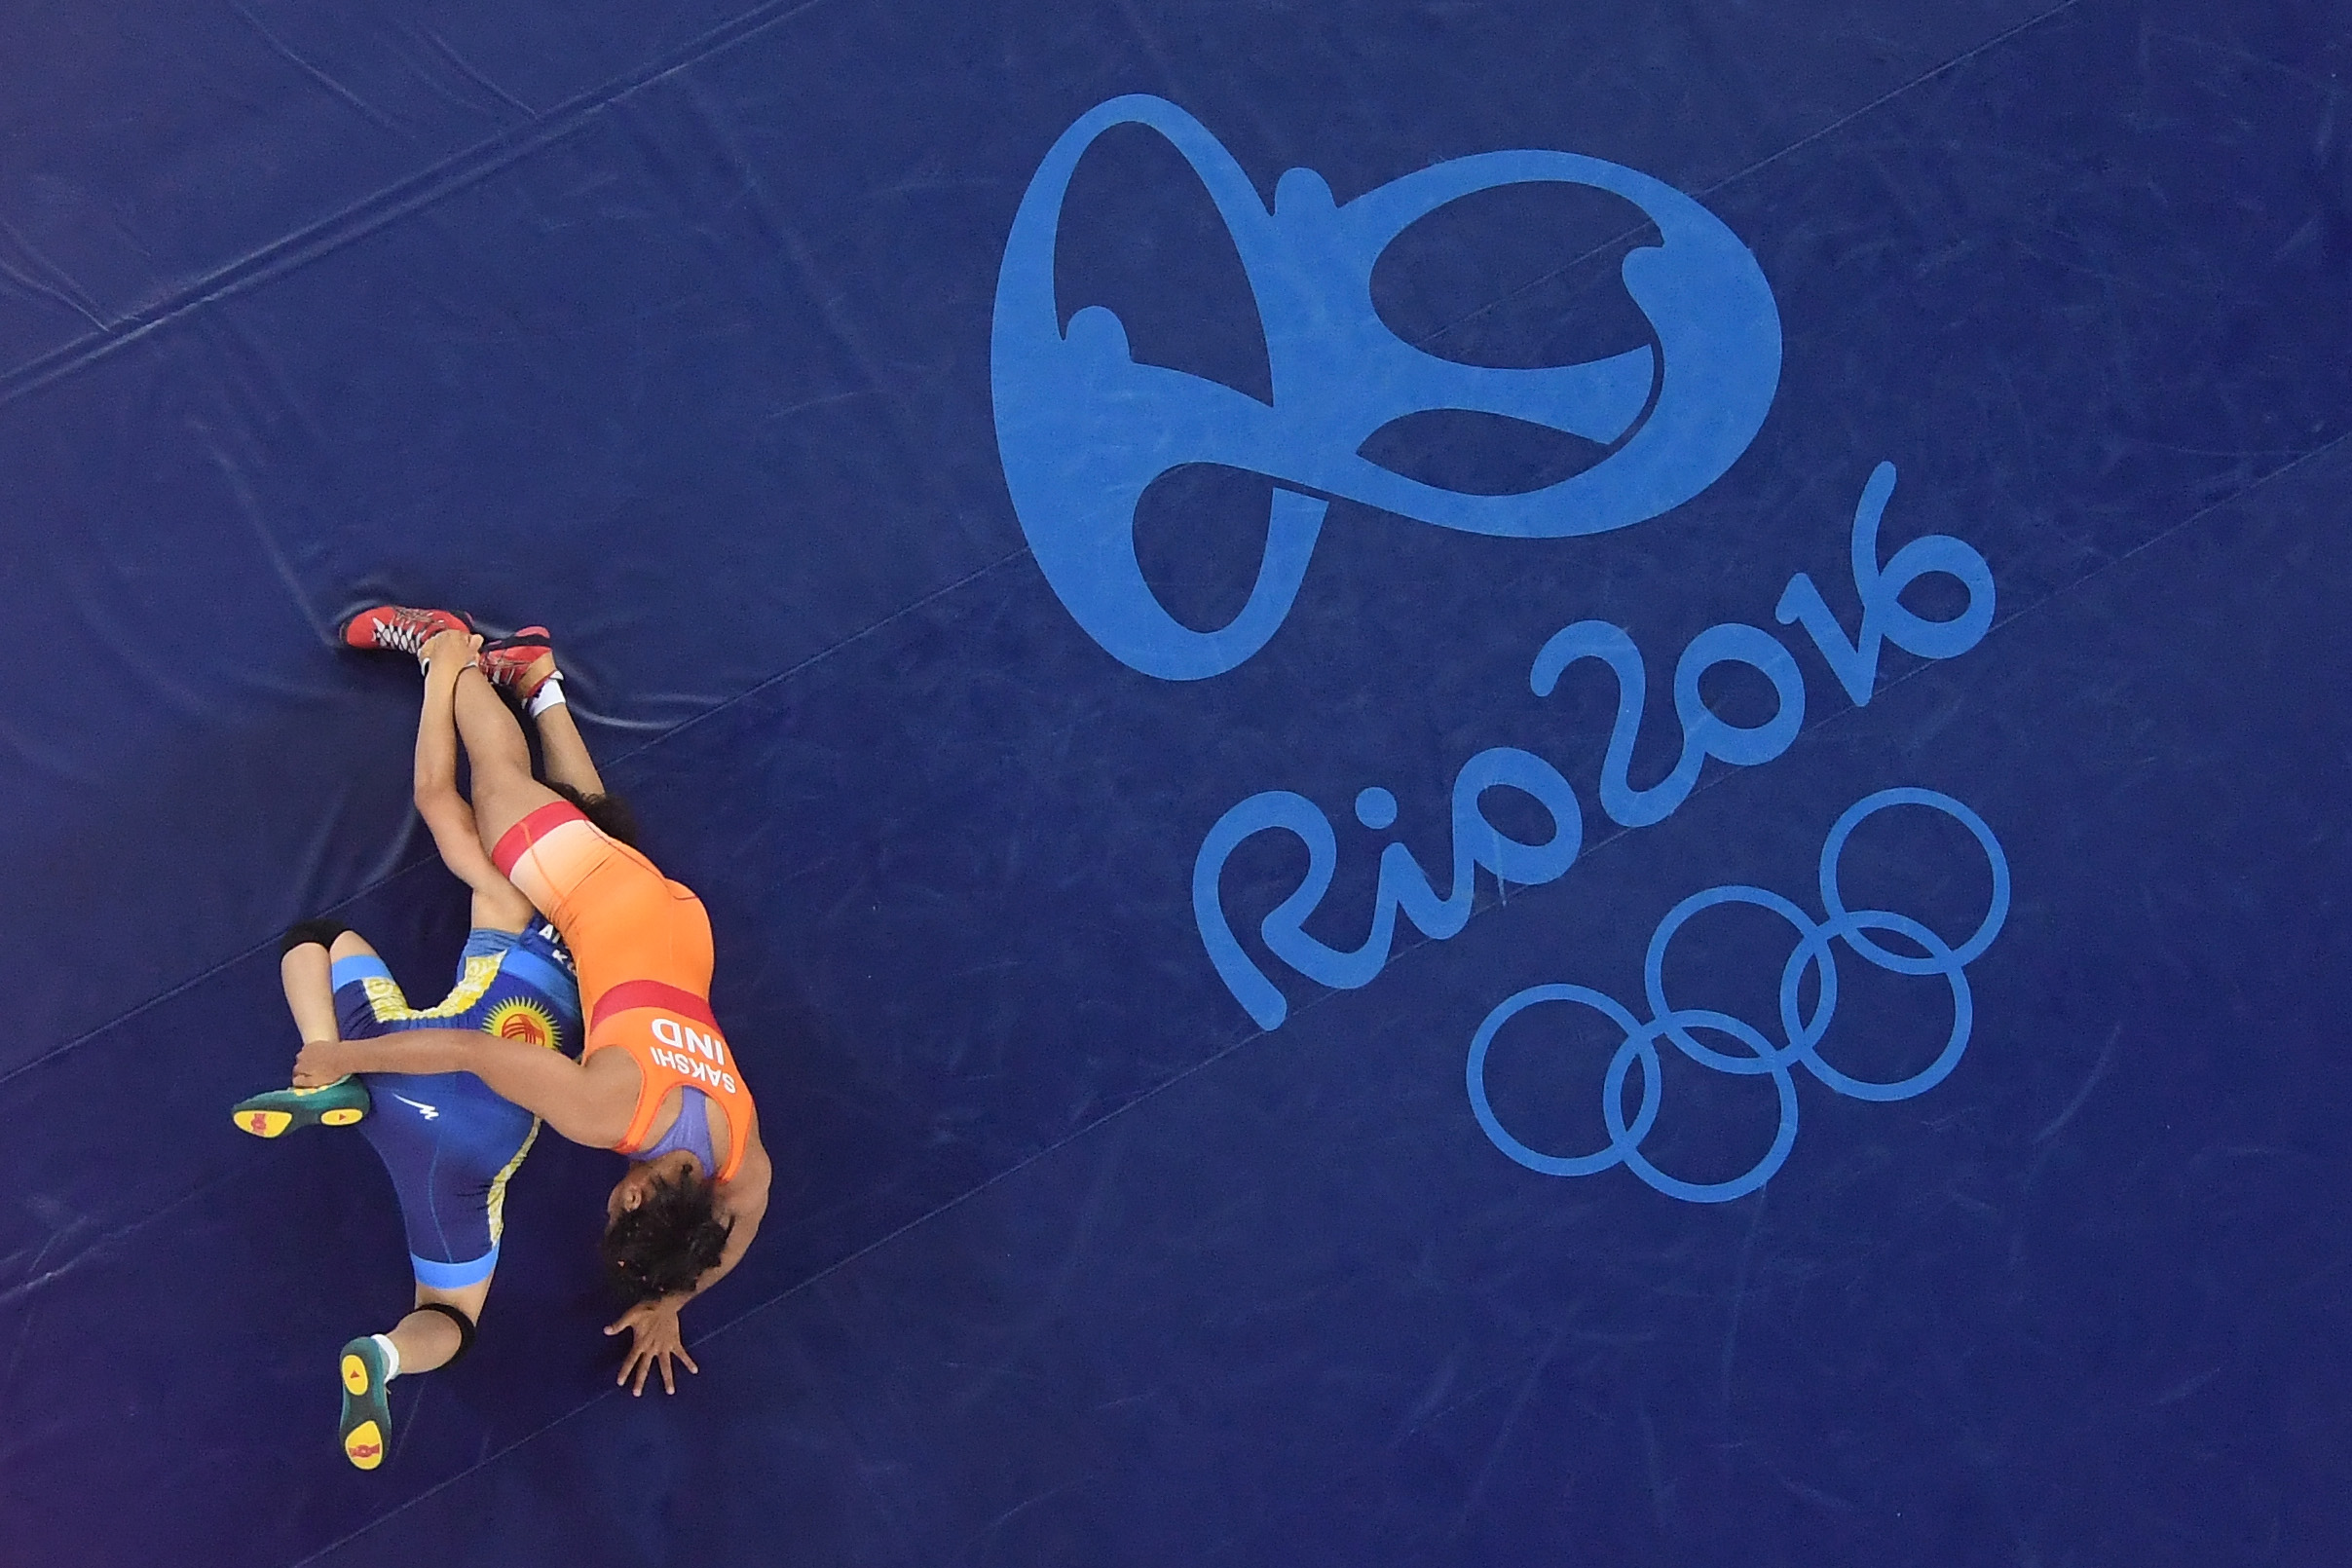 Rio 2016 | Sakshi Malik's bronze is worth more than we realize